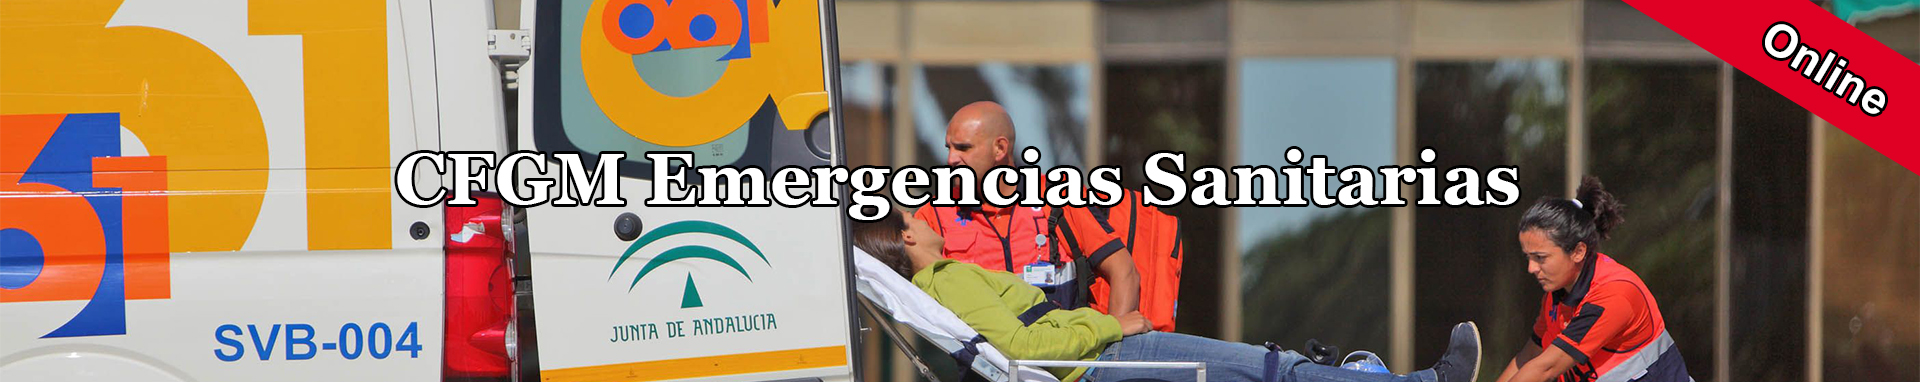 cfgm-emergencias.jpg